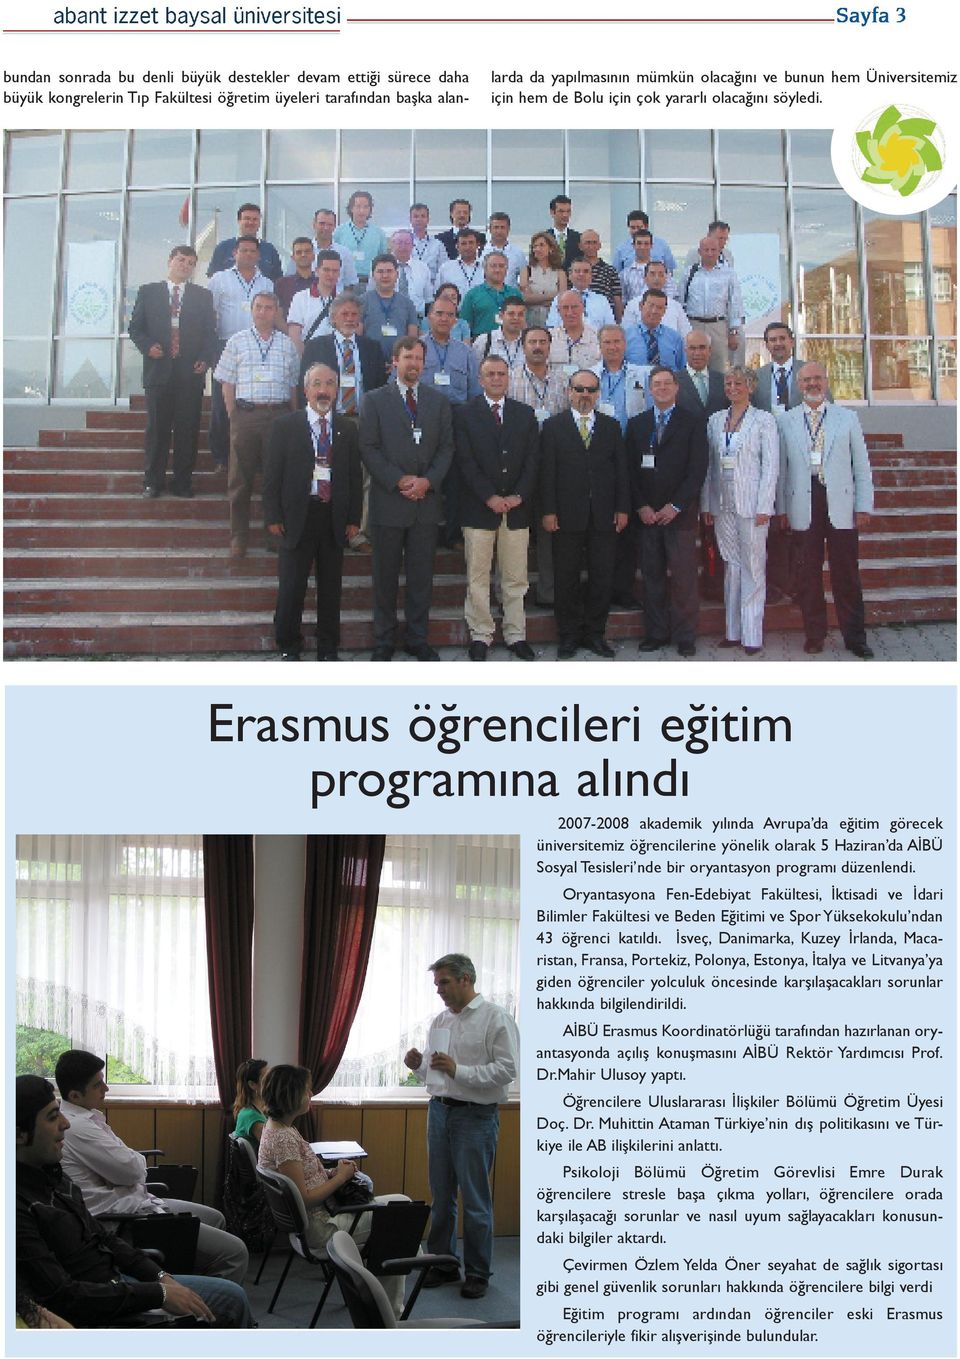 Erasmus öğrencileri eğitim programına alındı 2007-2008 akademik yılında Avrupa da eğitim görecek üniversitemiz öğrencilerine yönelik olarak 5 Haziran da AİBÜ Sosyal Tesisleri nde bir oryantasyon